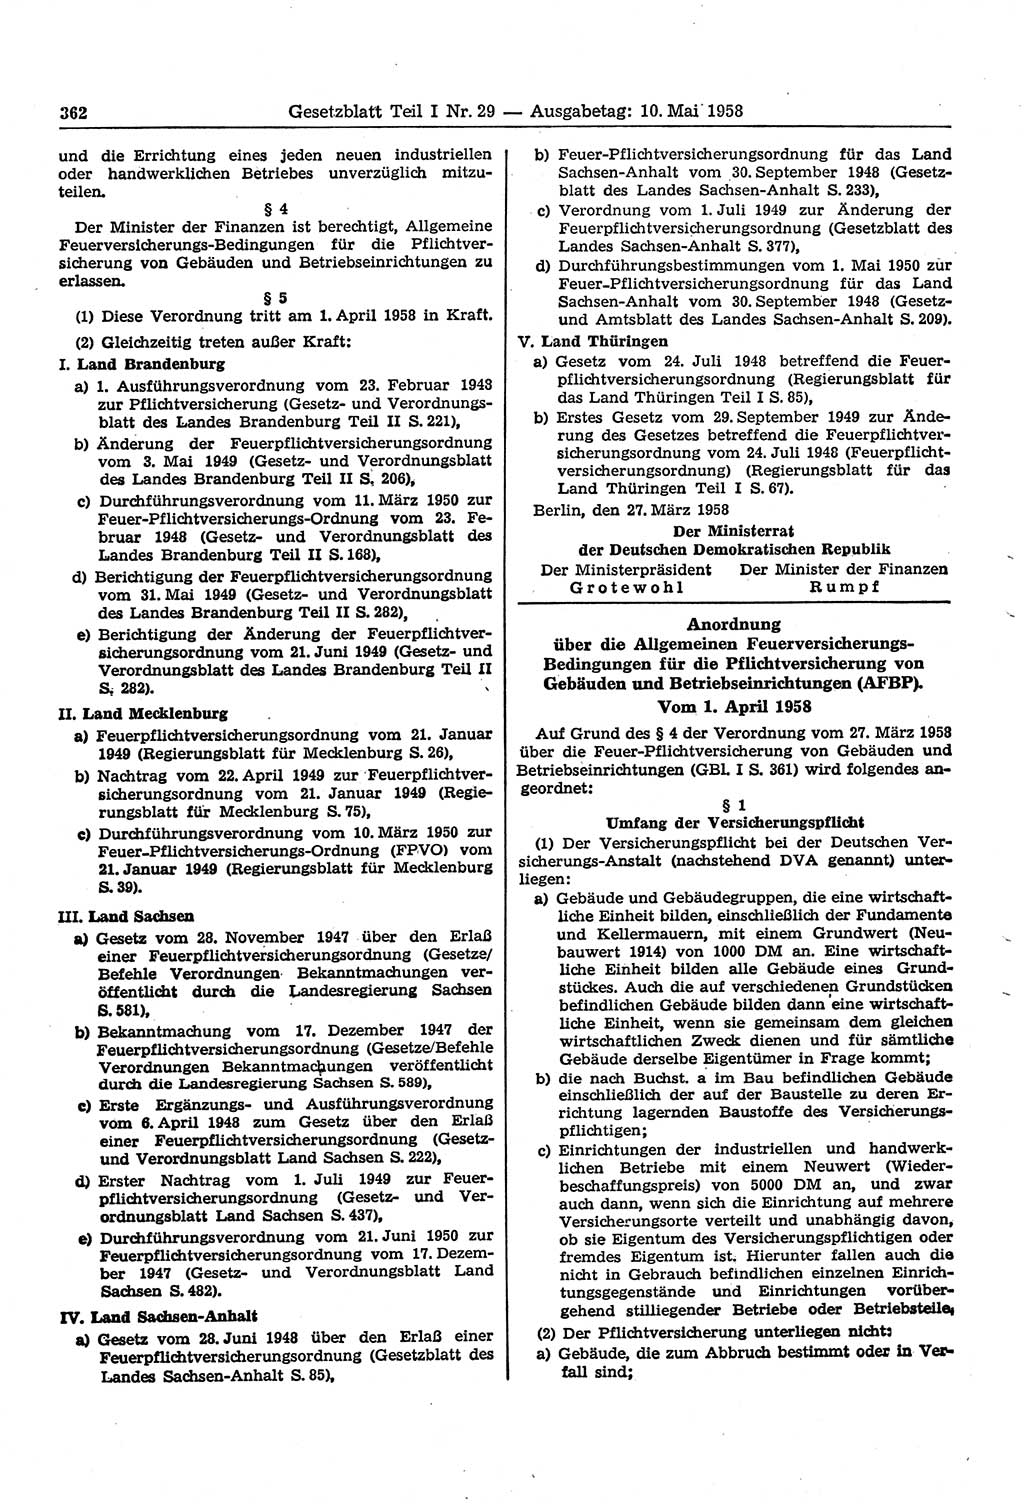 Gesetzblatt (GBl.) der Deutschen Demokratischen Republik (DDR) Teil Ⅰ 1958, Seite 362 (GBl. DDR Ⅰ 1958, S. 362)